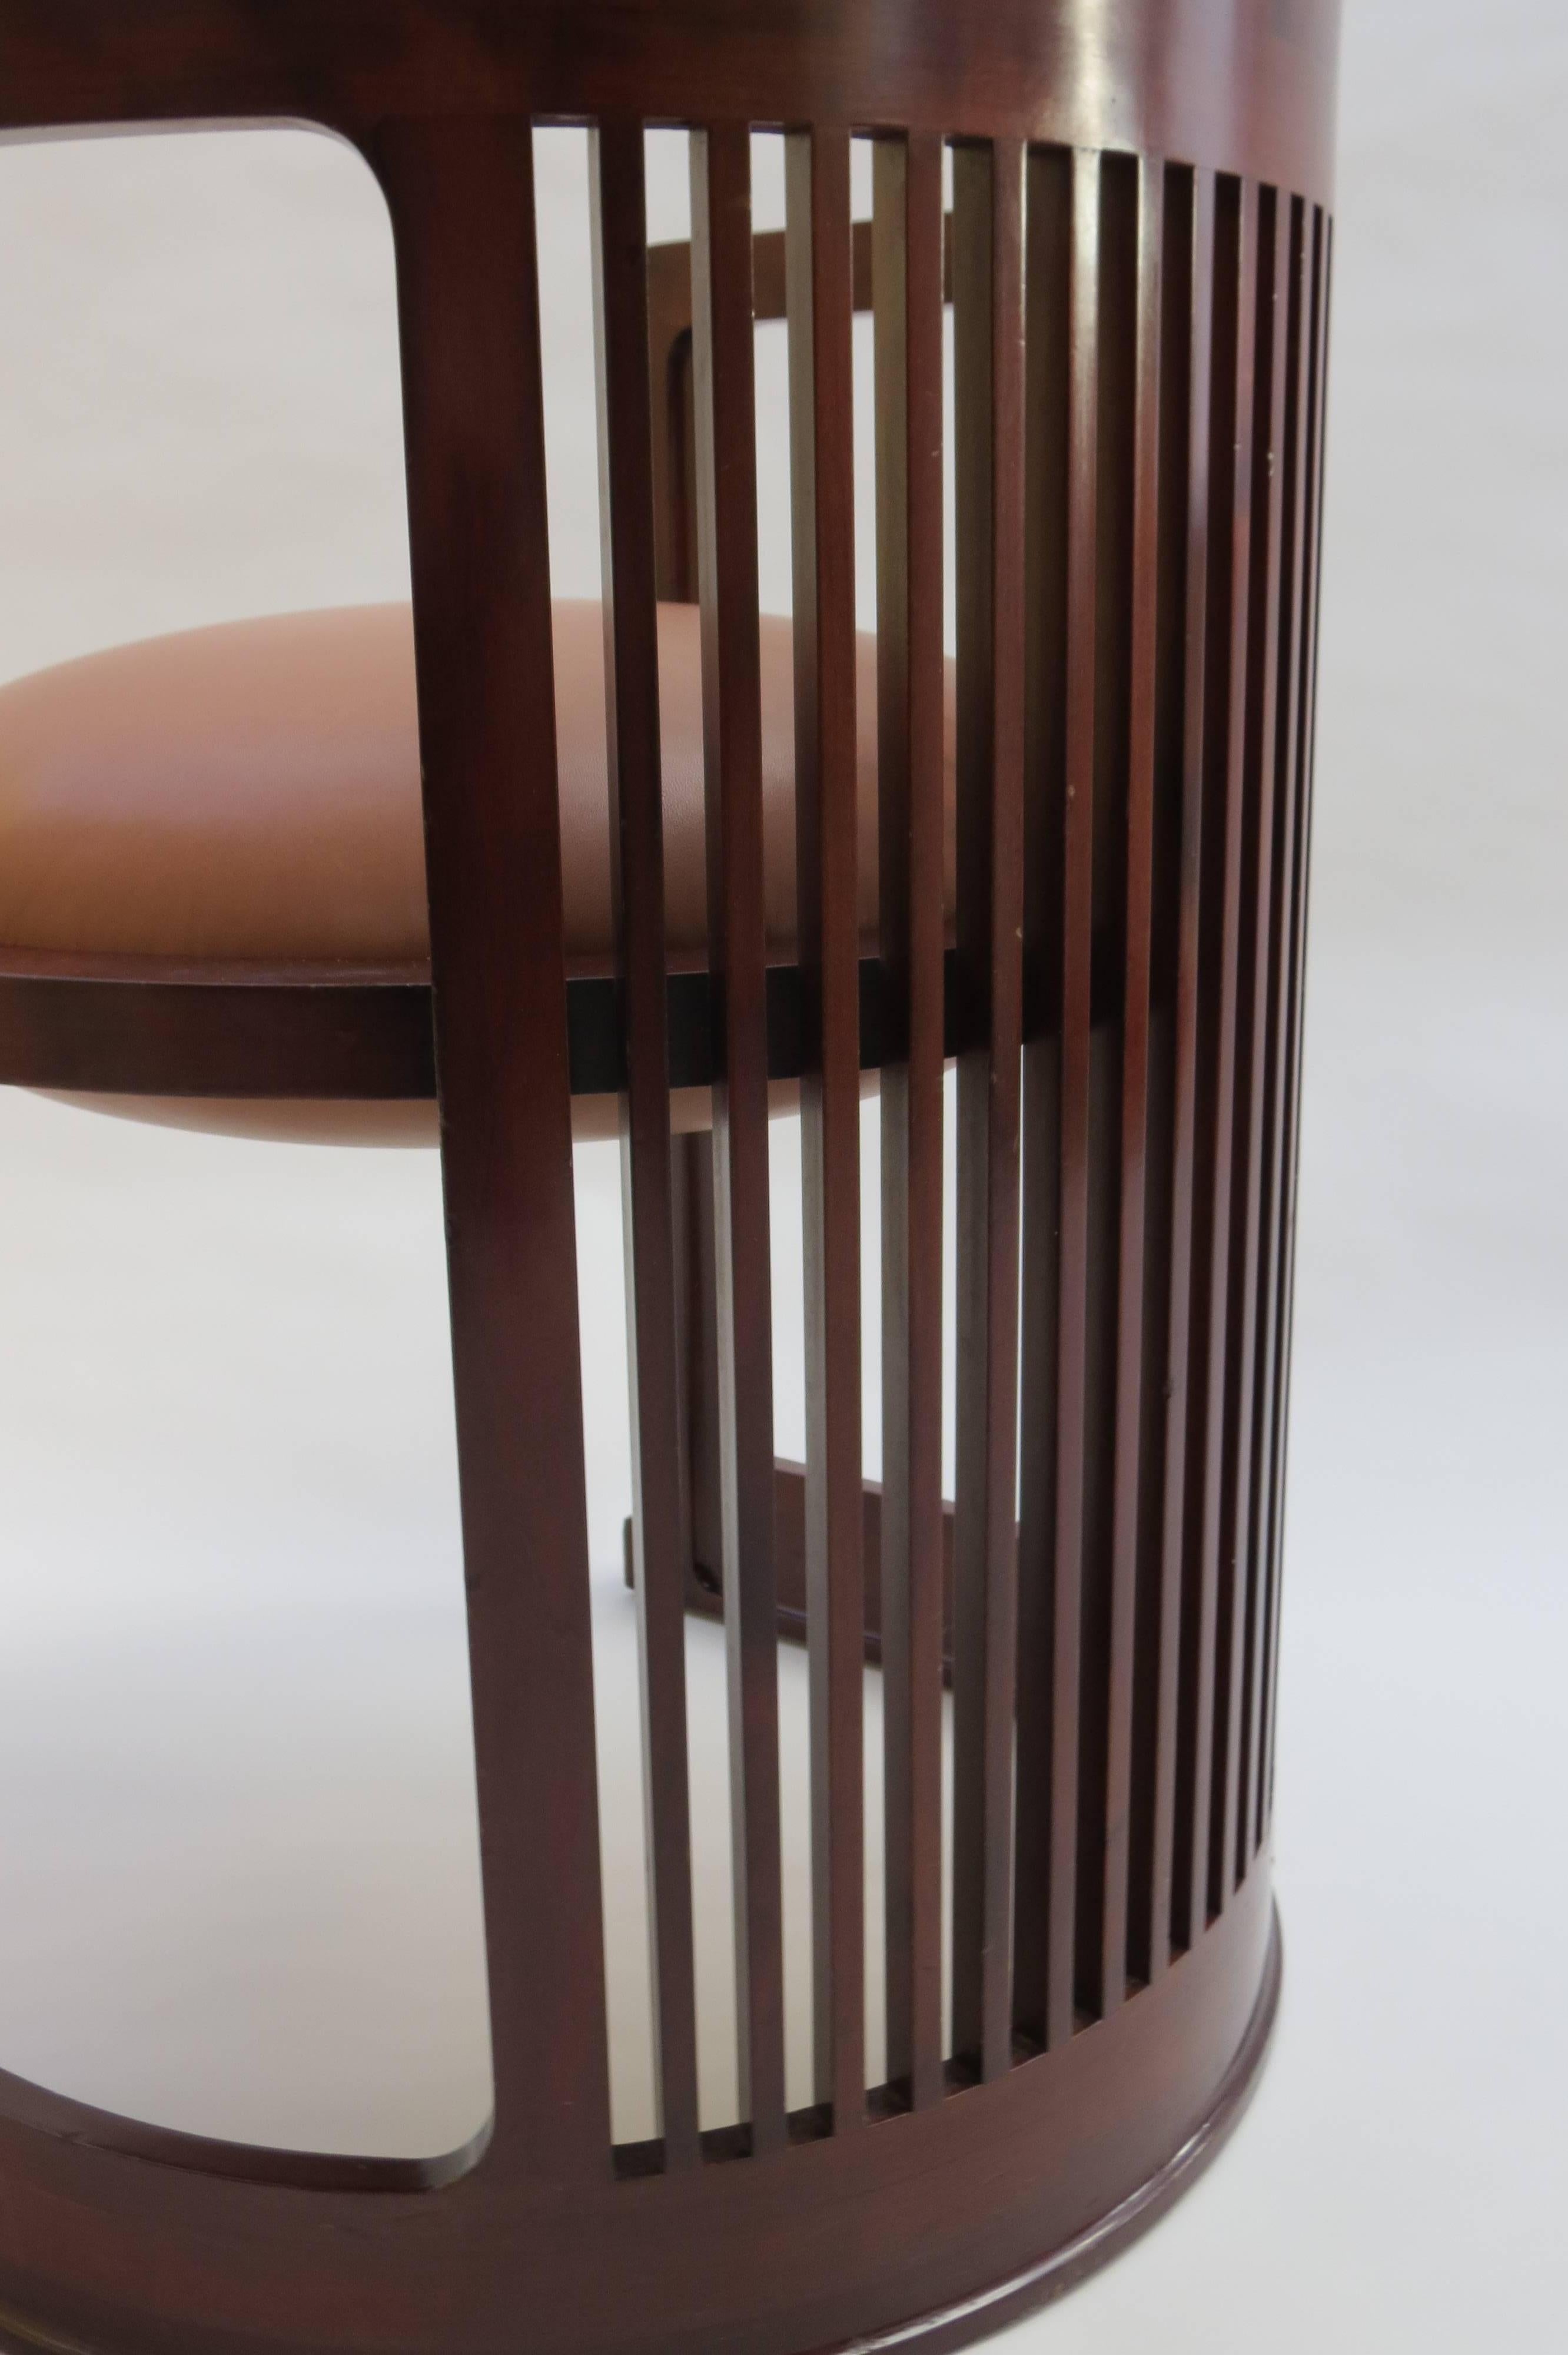 North American Barrel Taliesin Chair designed by Frank Lloyd Wright